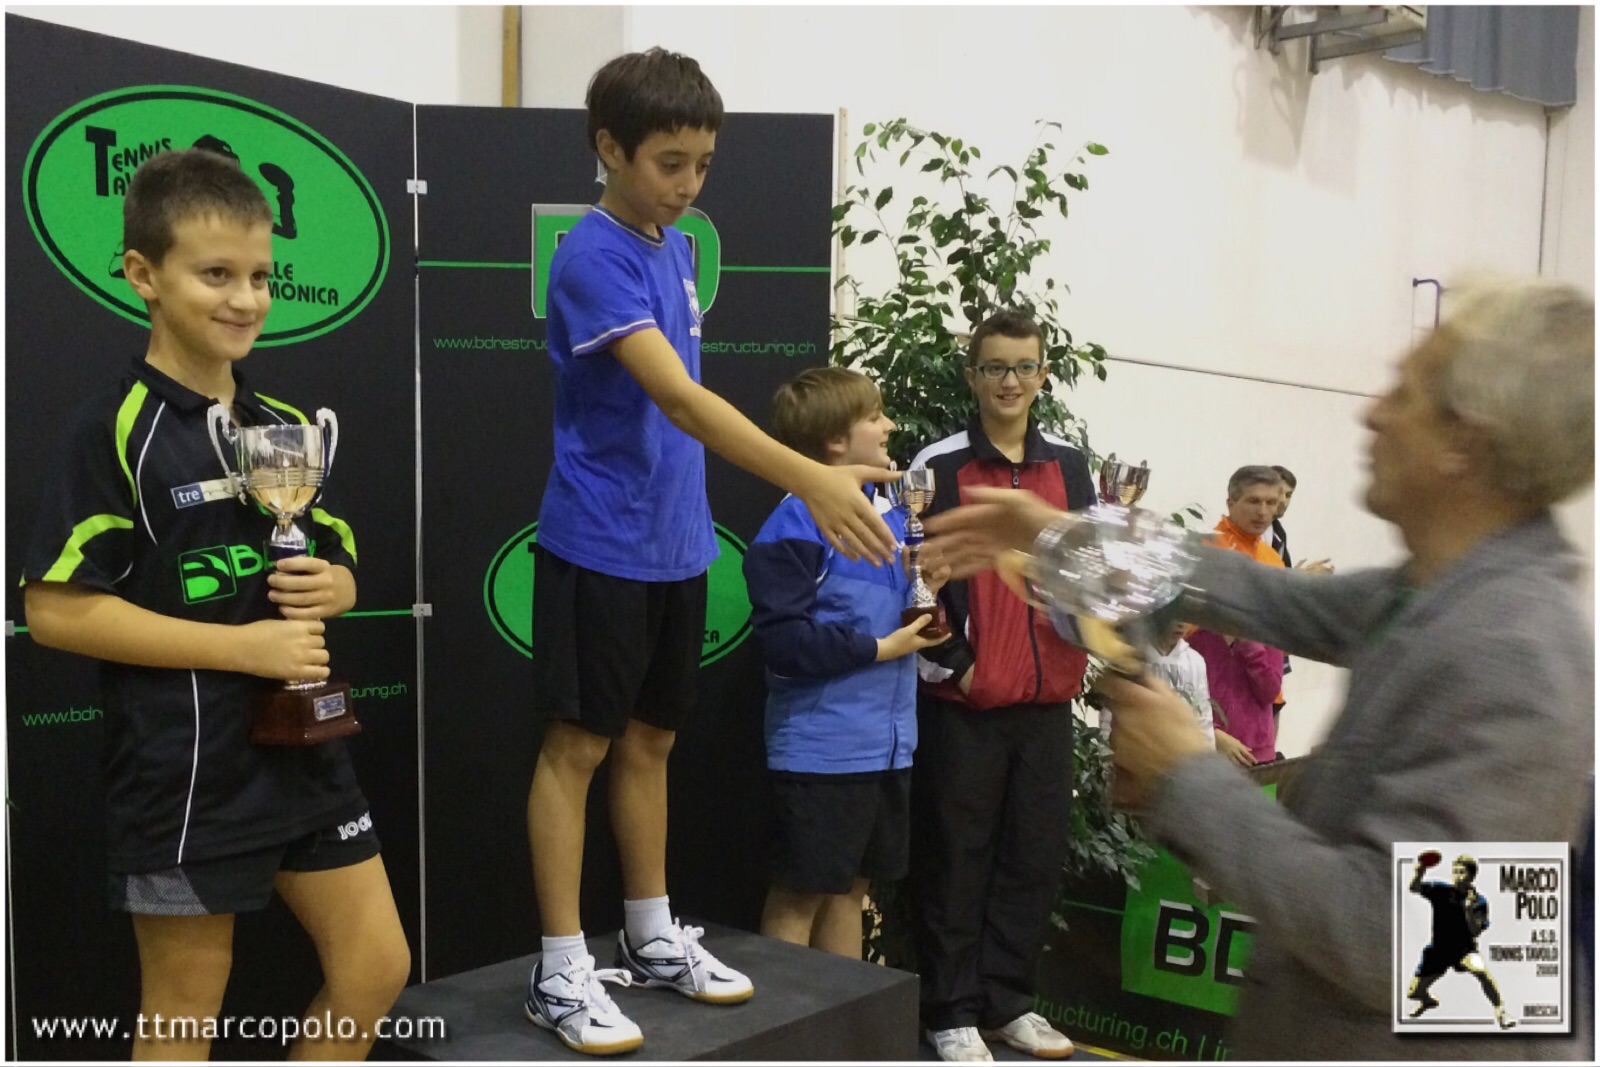 Il podio della categoria Ragazzi al torneo regionale giovanile di Angolo Terme